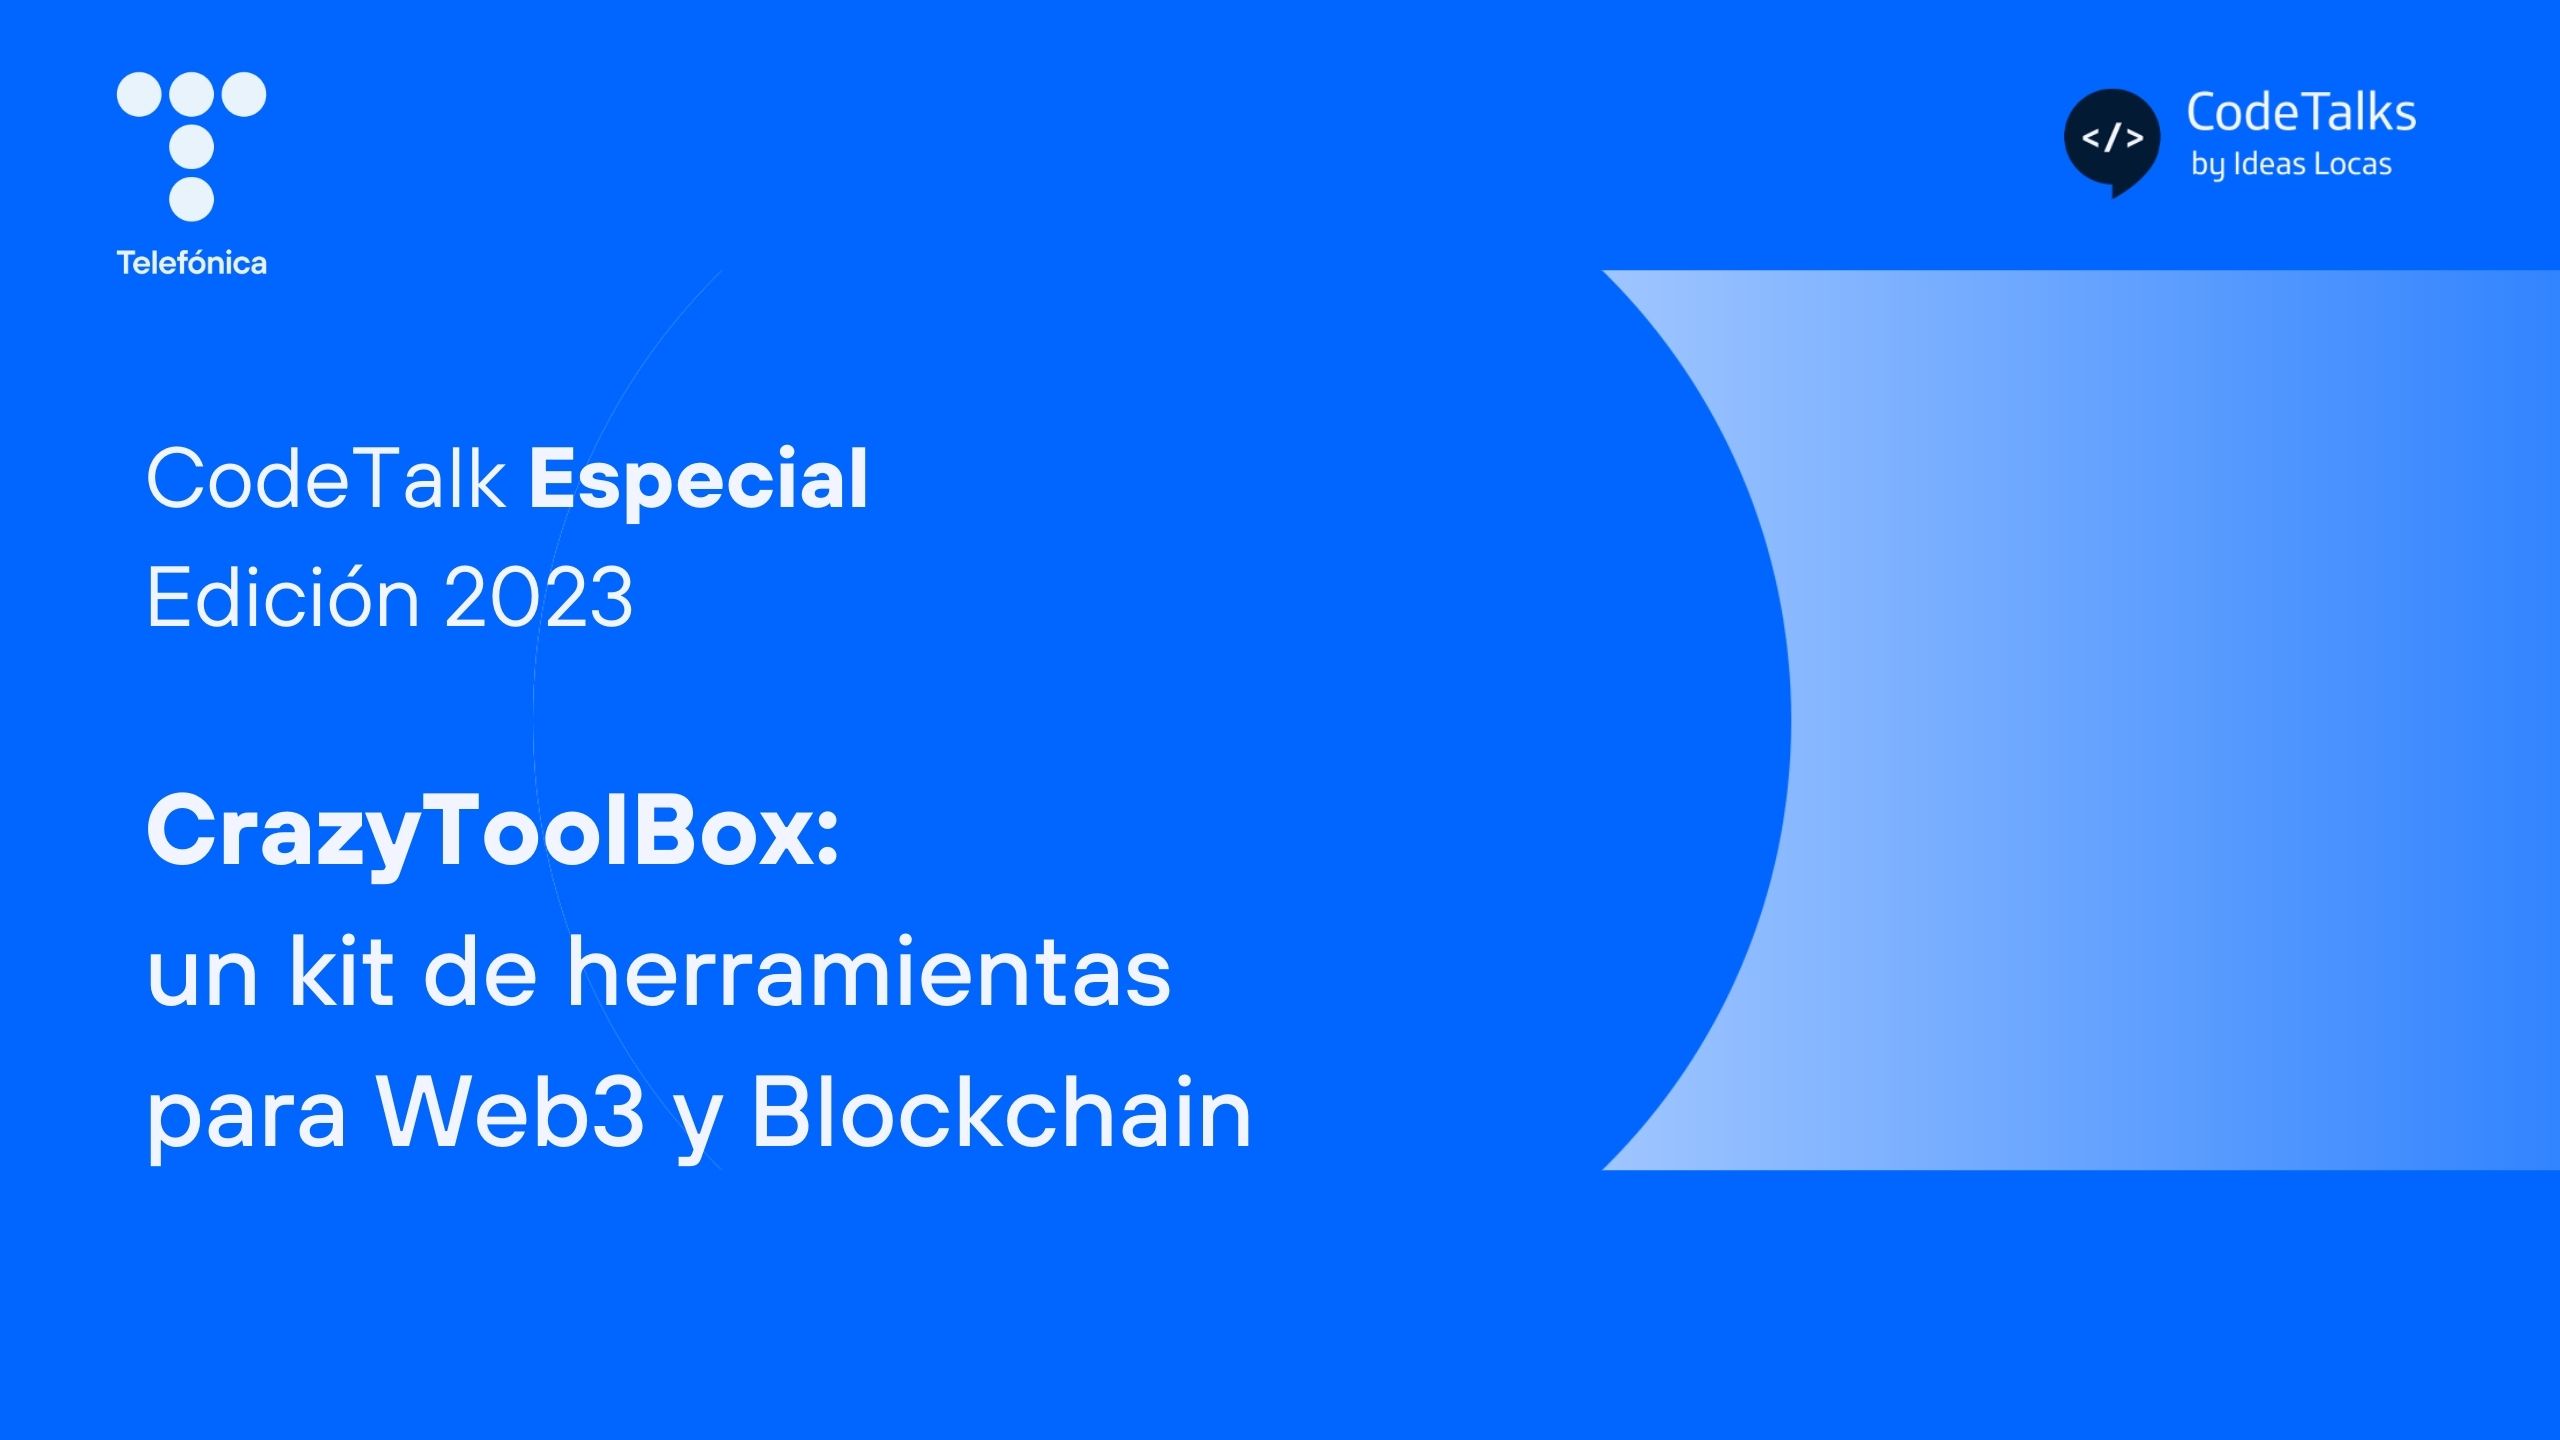 CrazyToolBox: un kit de herramientas para Web3 y Blockchain